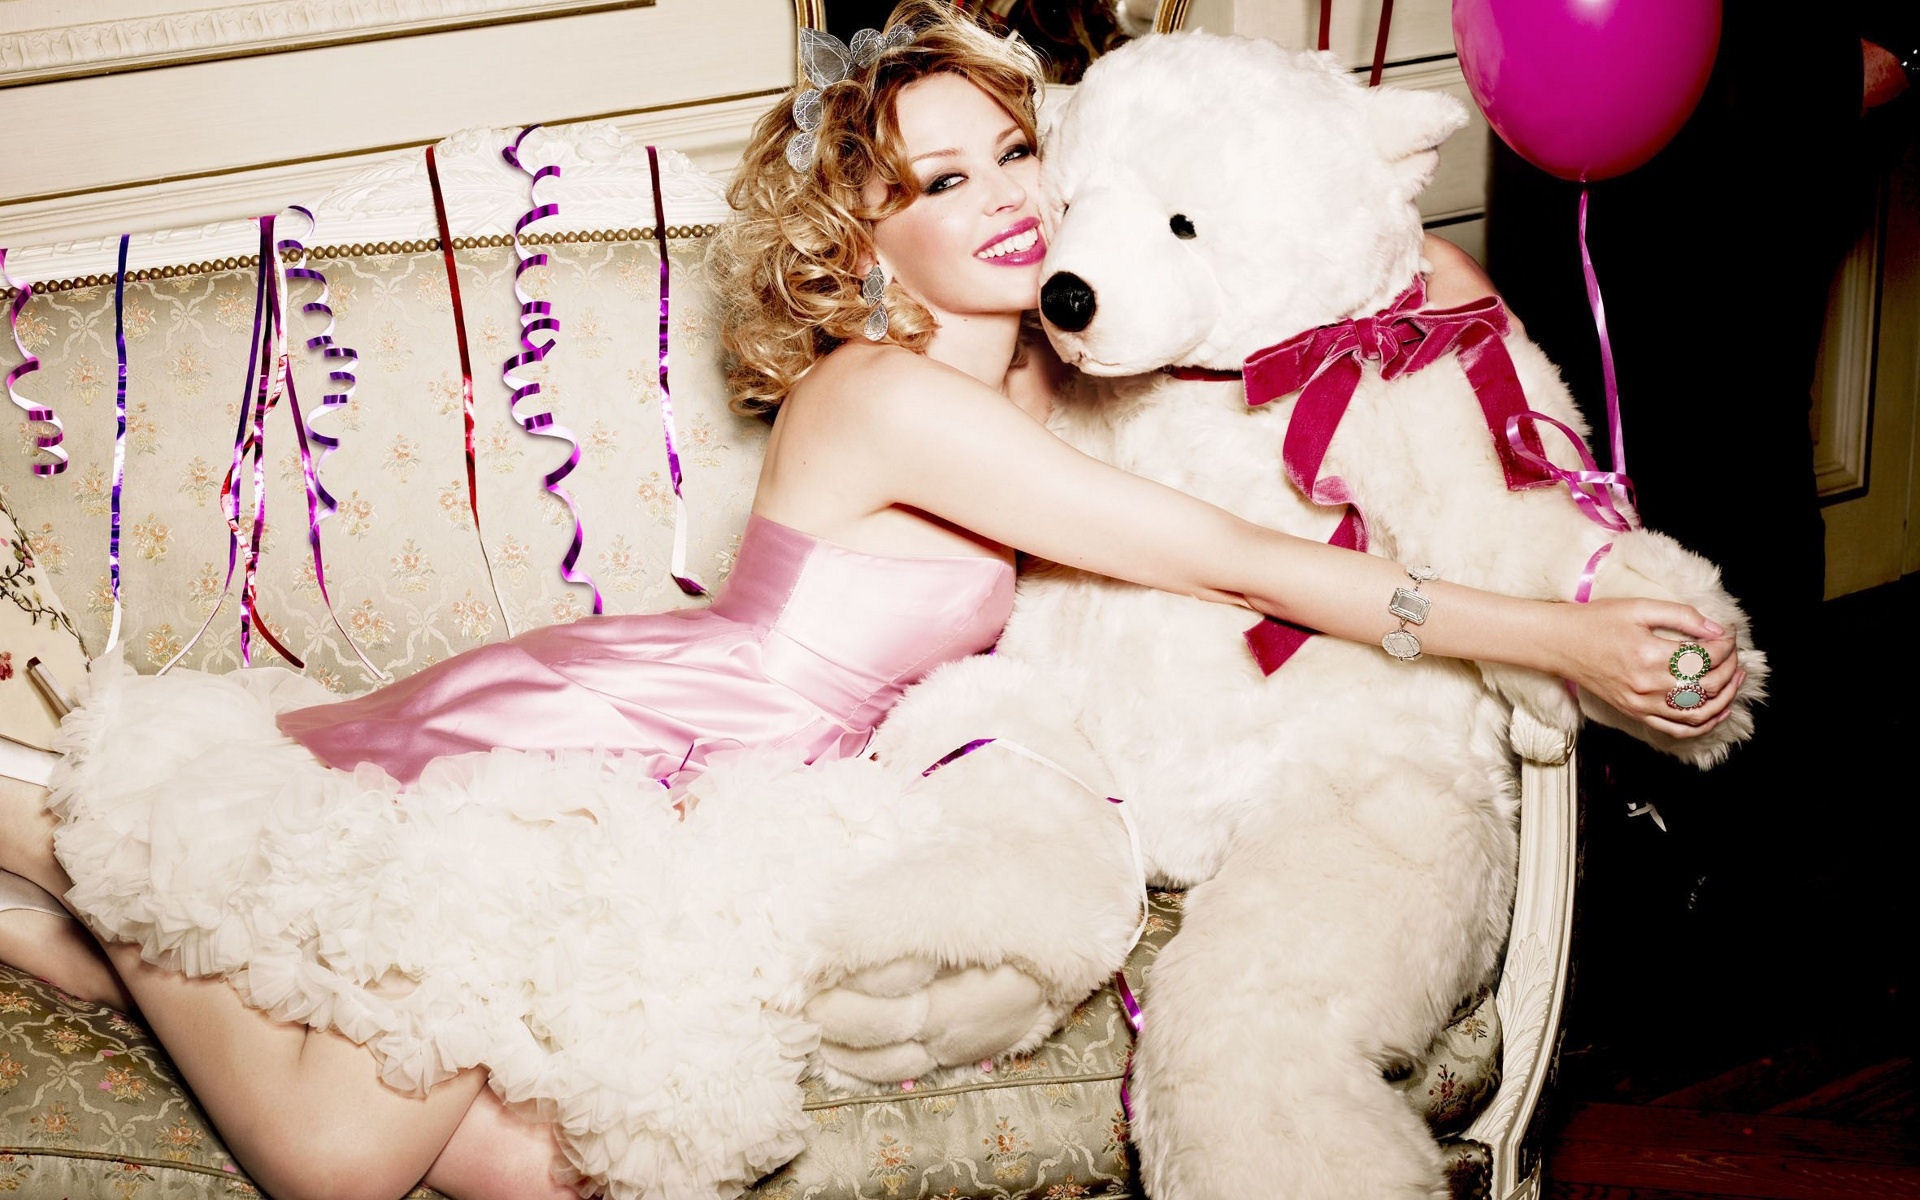 Kylie Minogue Bear Love for 1920 x 1200 widescreen resolution